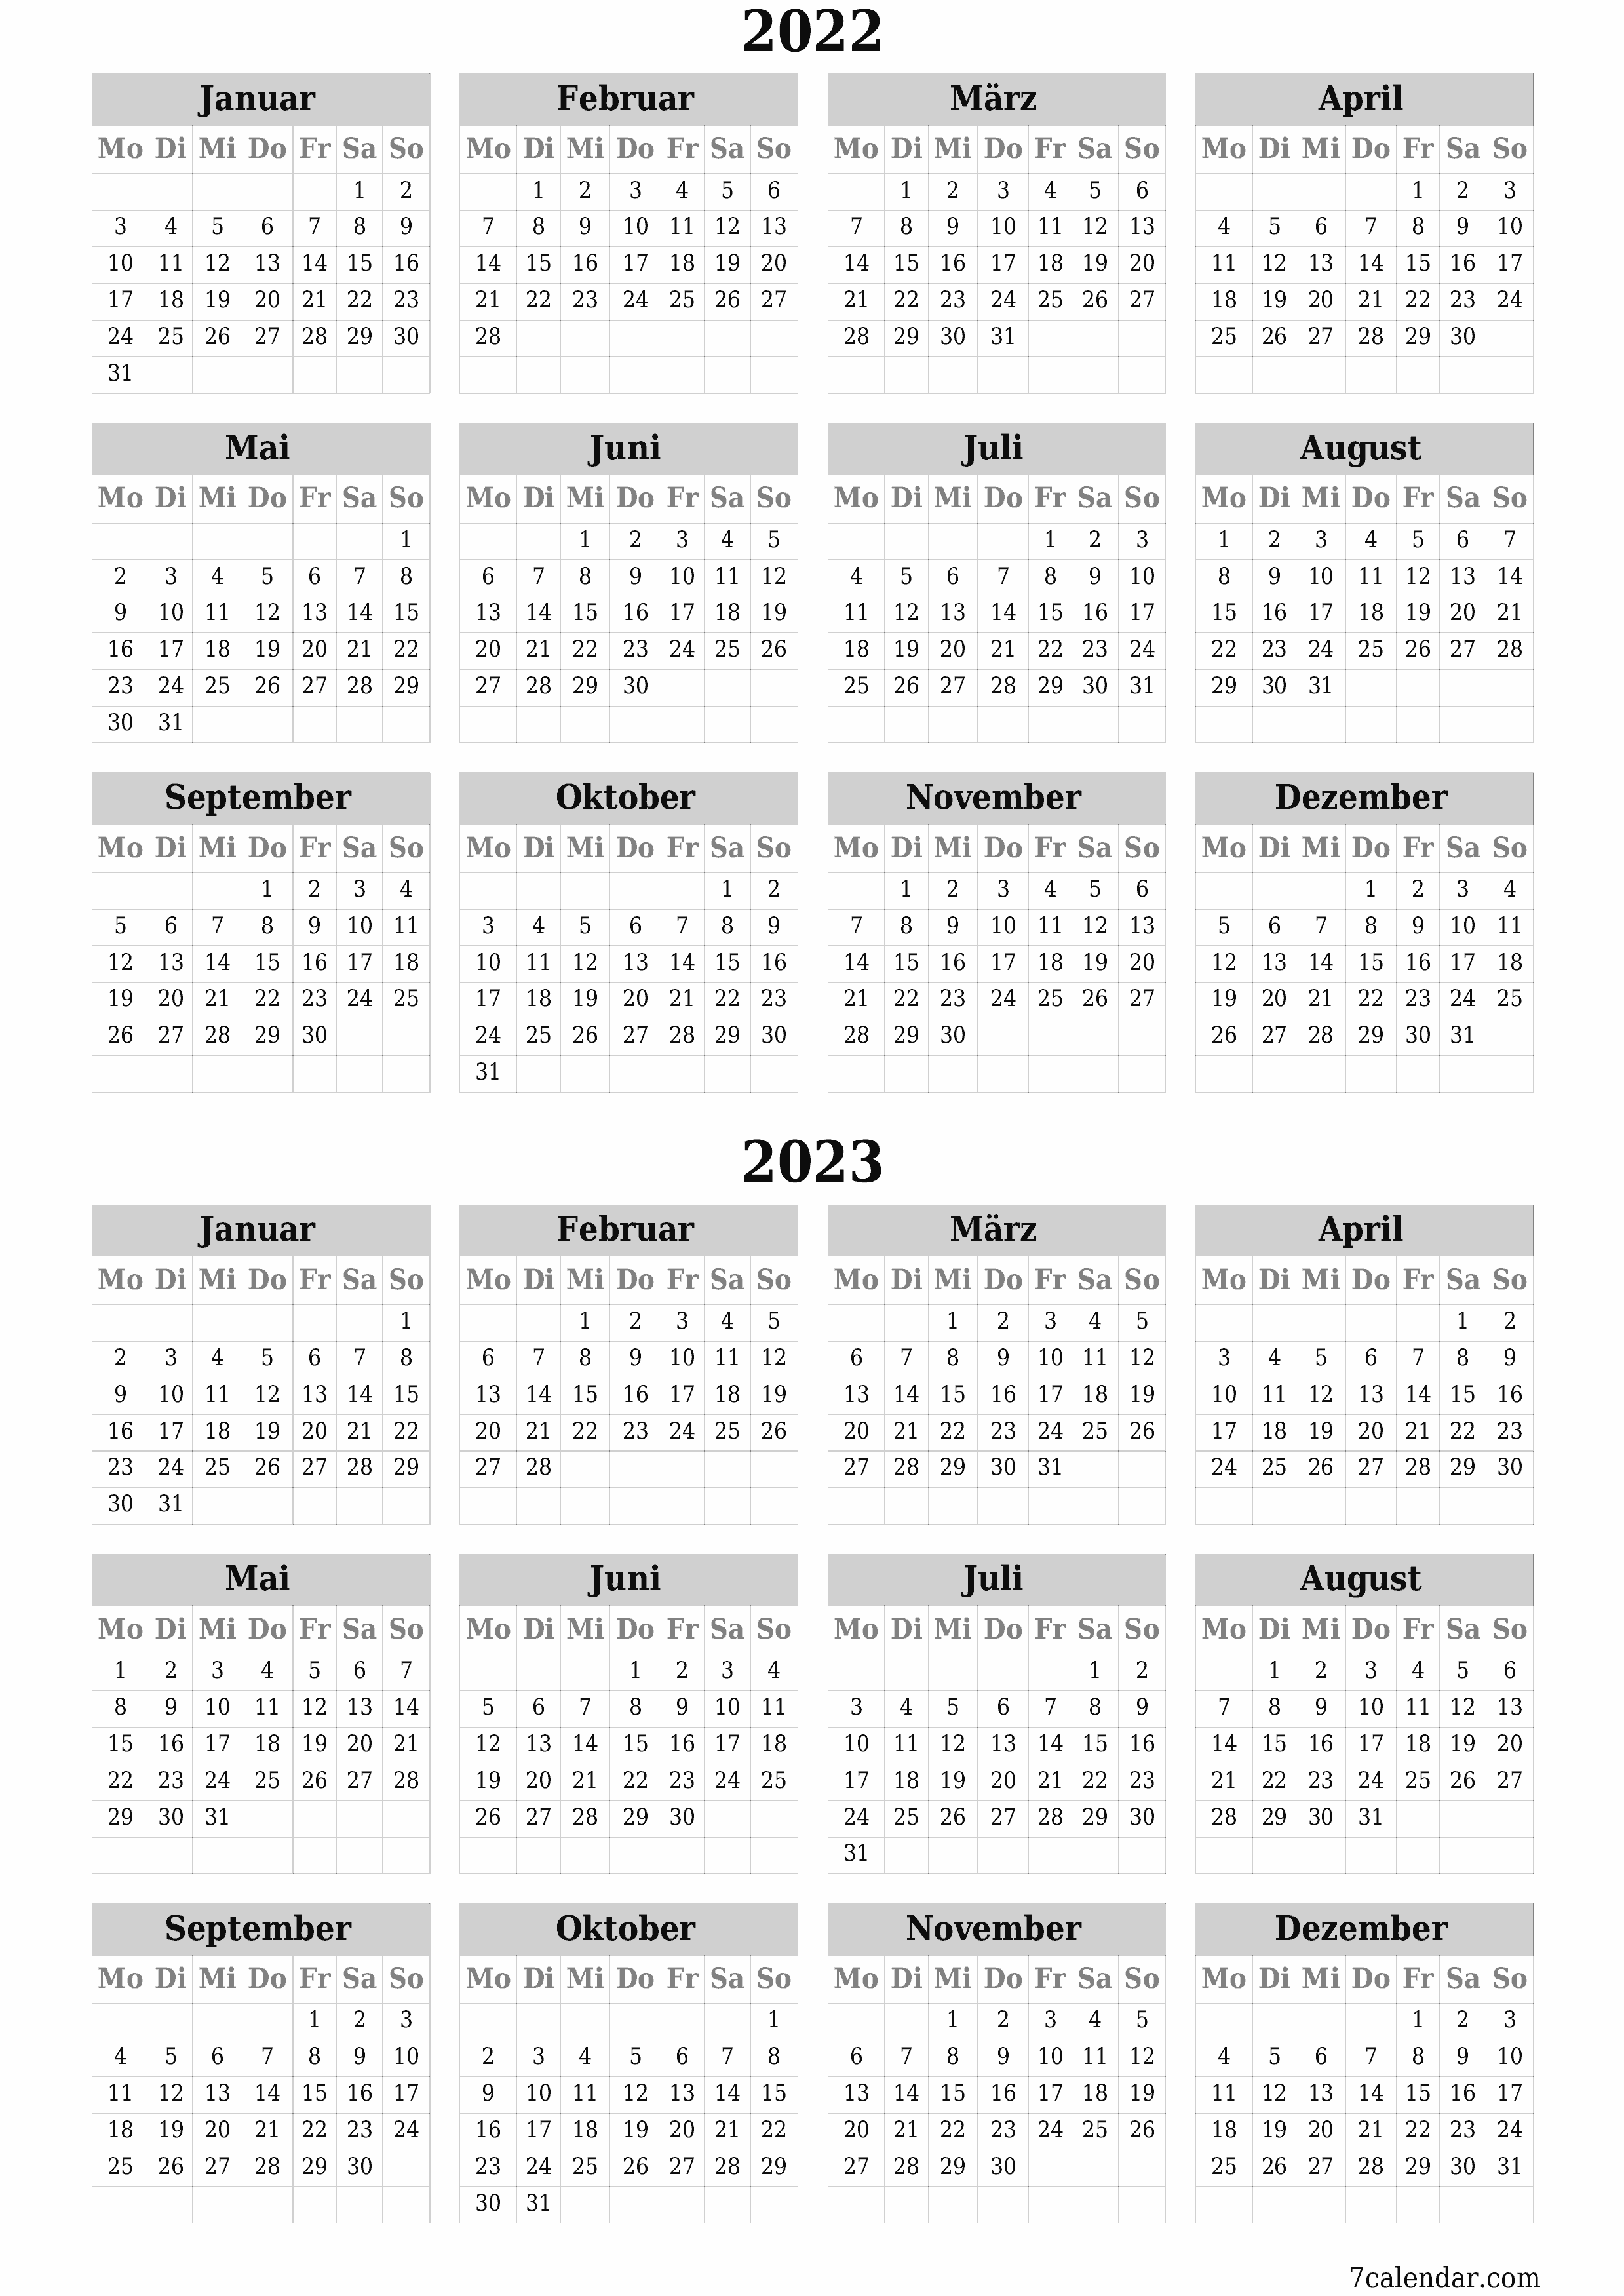  zum Ausdrucken Wandkalender vorlage kostenloser vertikal Jahreskalender Kalender September (Sep) 2022